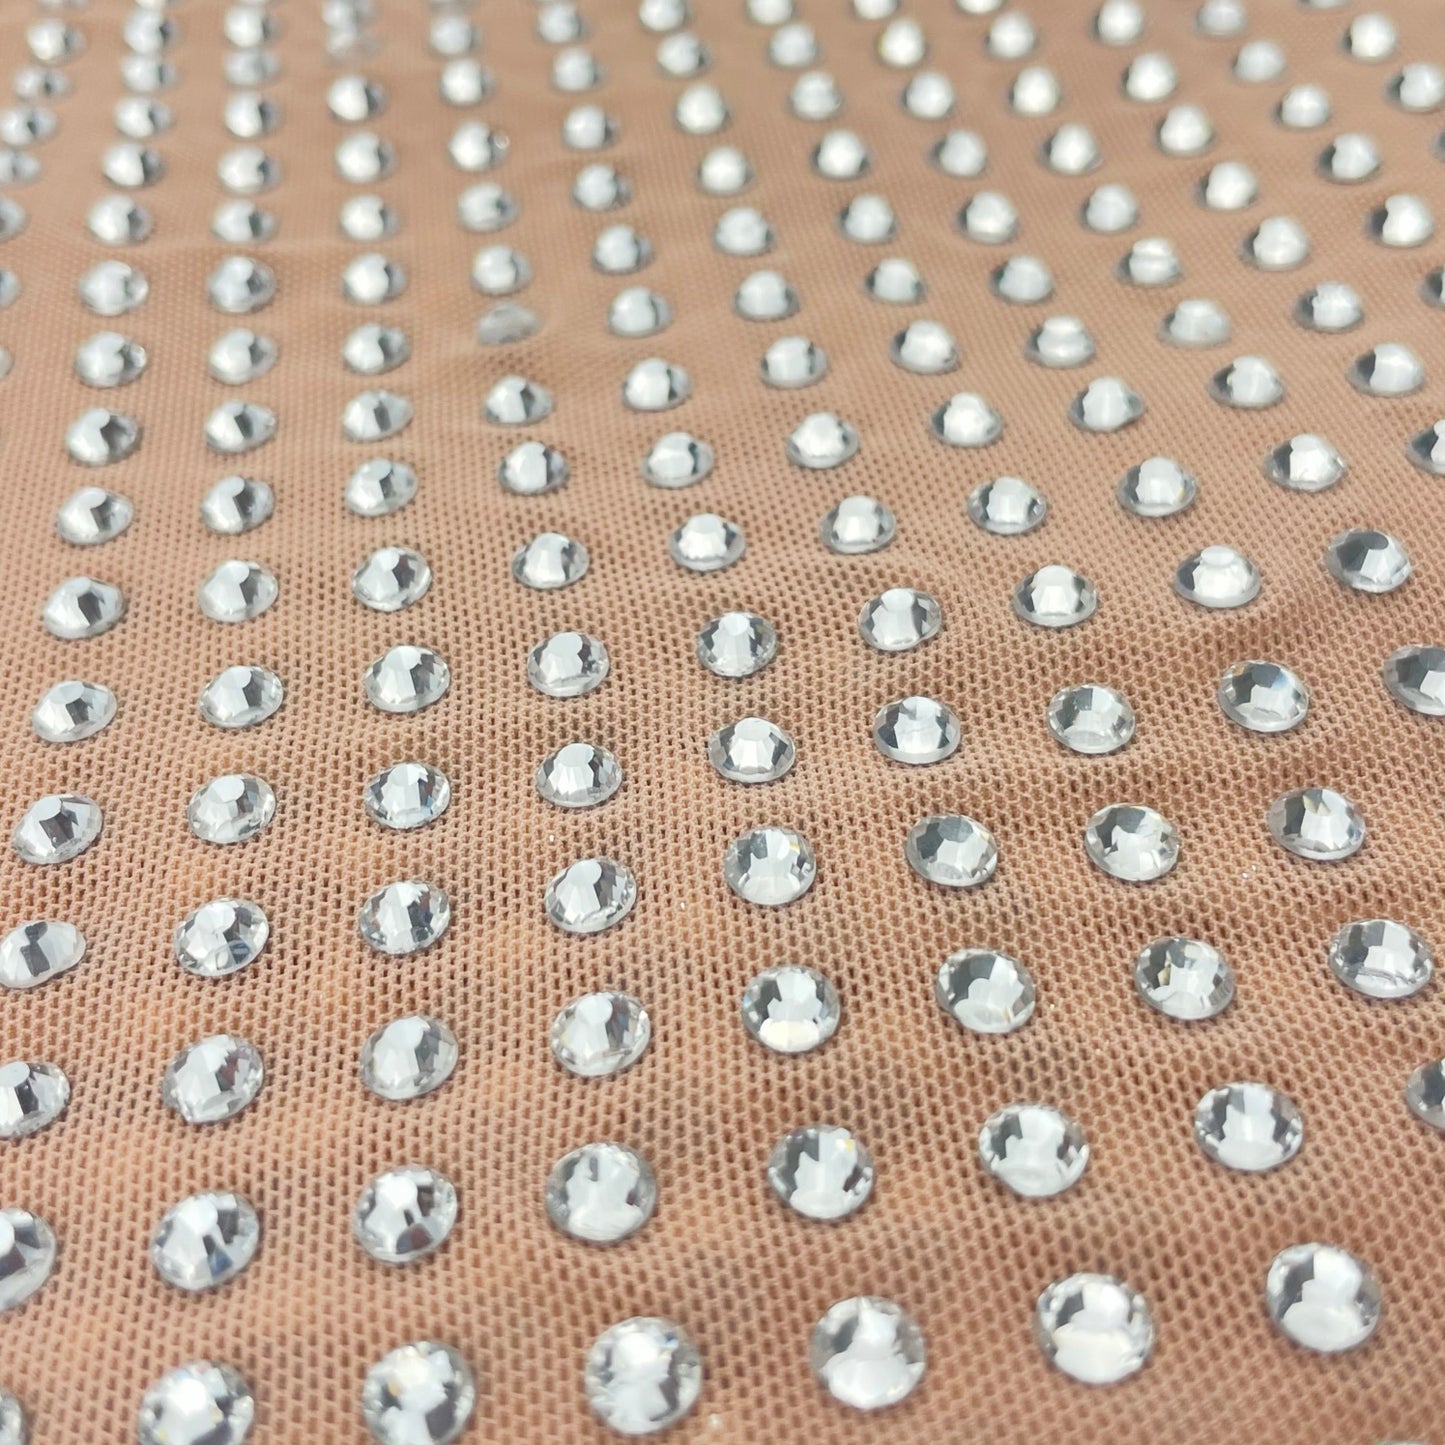 Stretchy Rhinestone Fabric